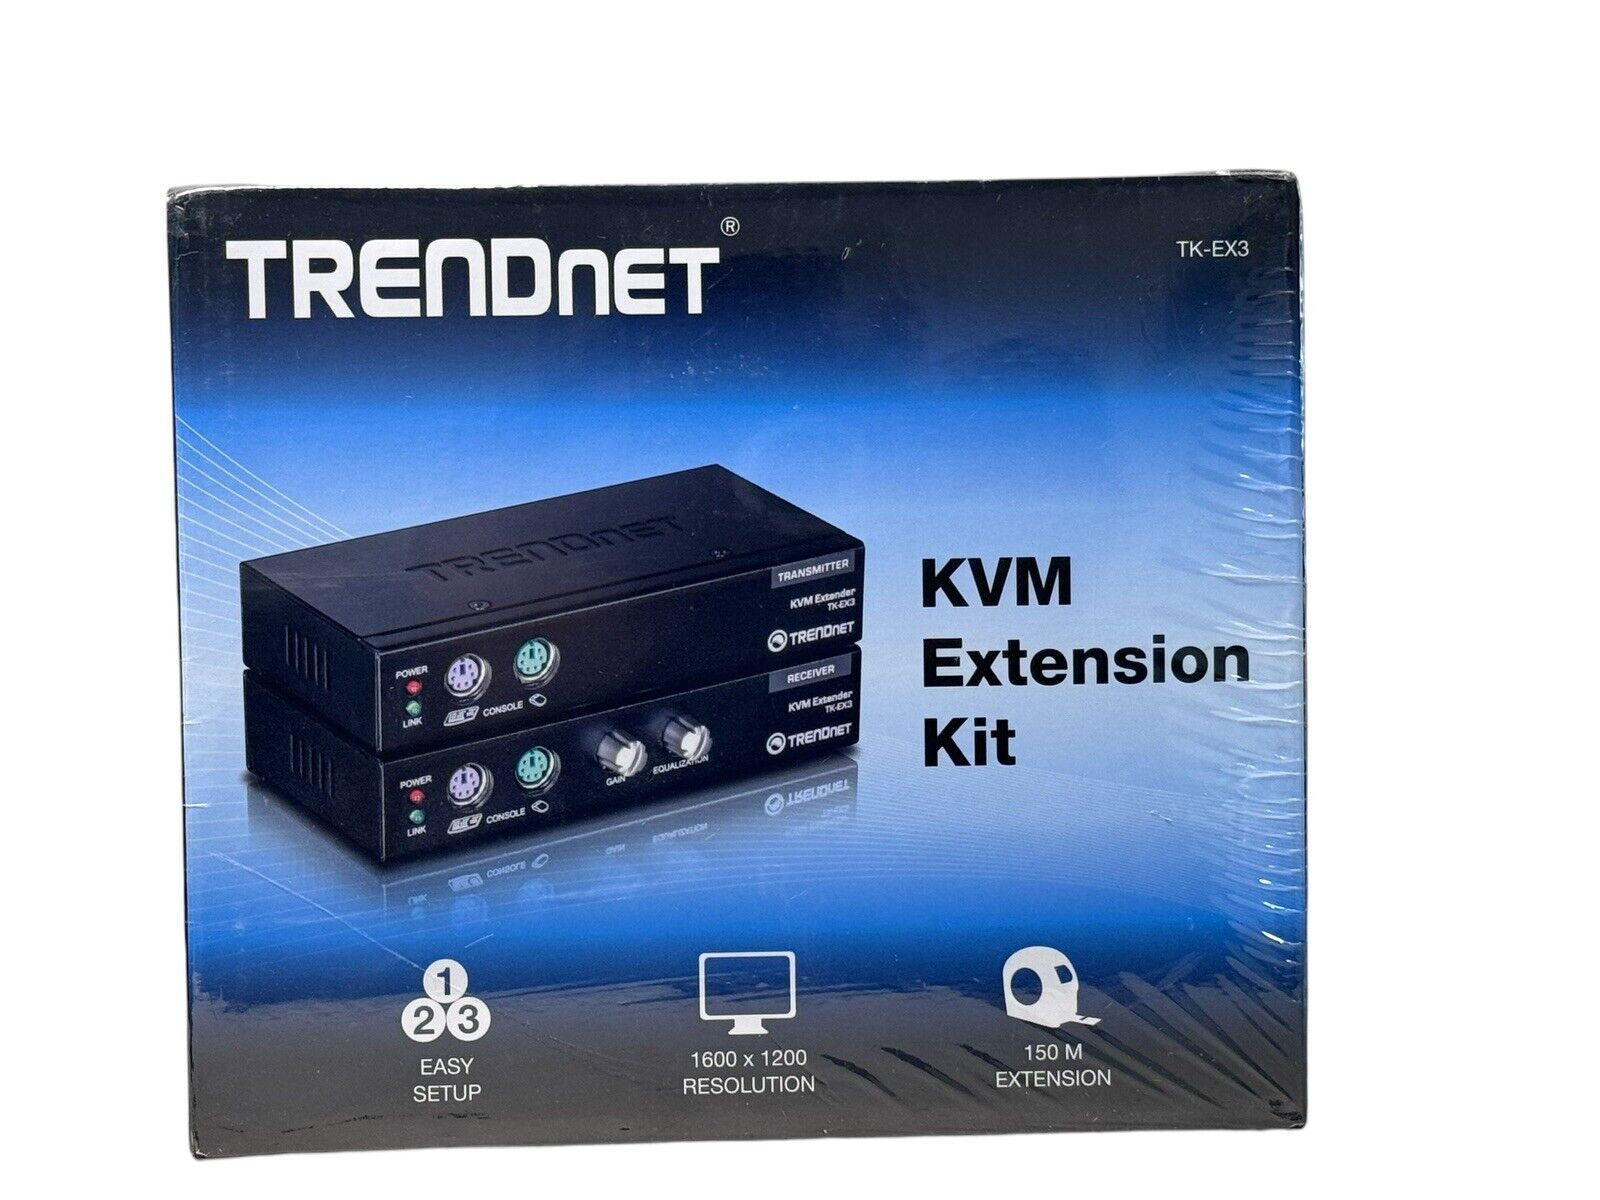 TRENDnet TK-EX3 KVM Extension Kit NEW SEALED IN BOX